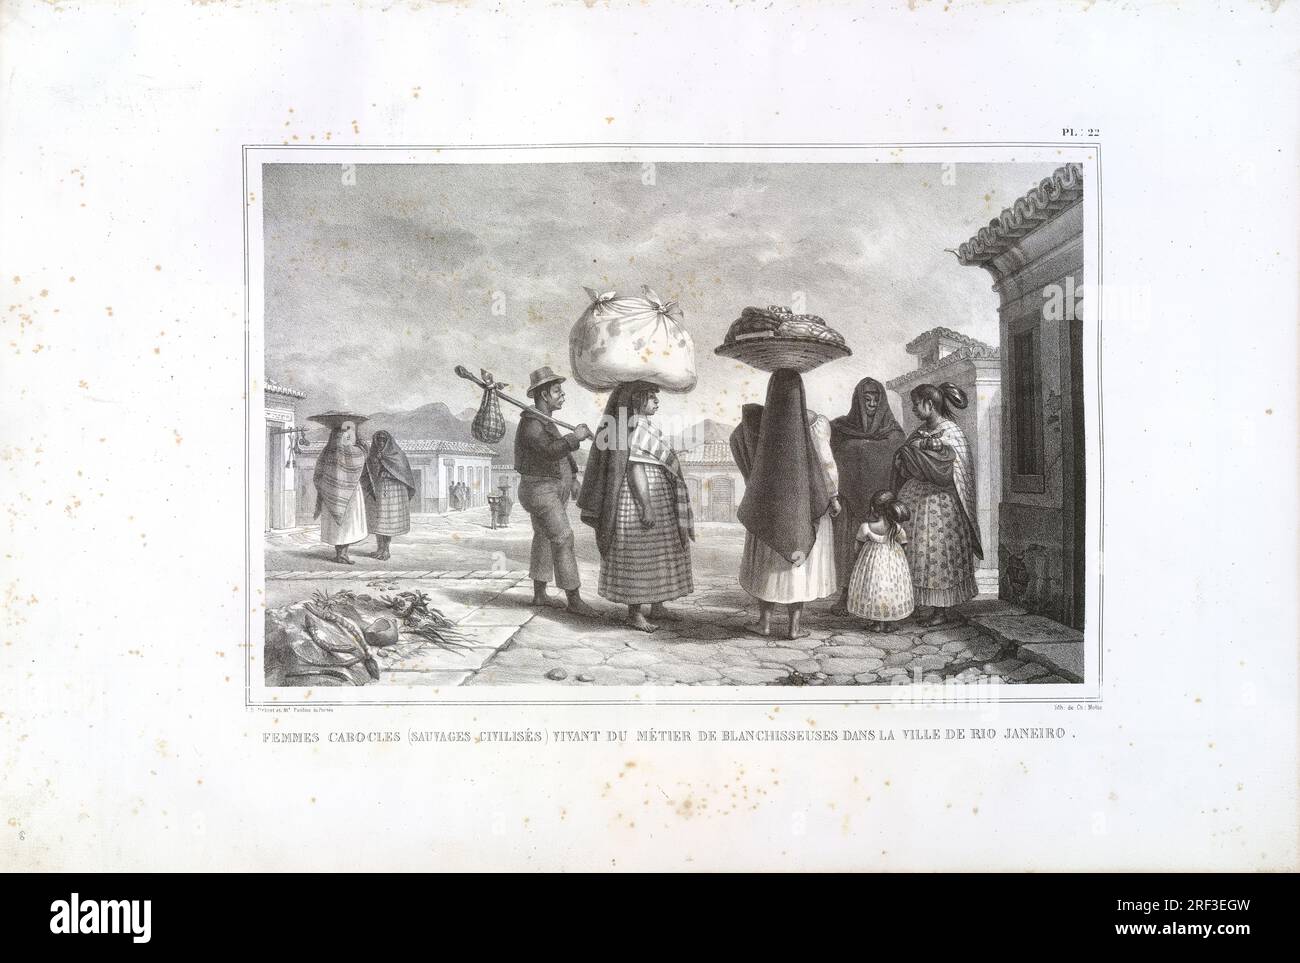 Femmes cabocles (sauvages civilisés) vivant du métier de blanchisseuses dans la ville de Rio de Janeiro 1834 di Charles Etienne Pierre Motte Foto Stock